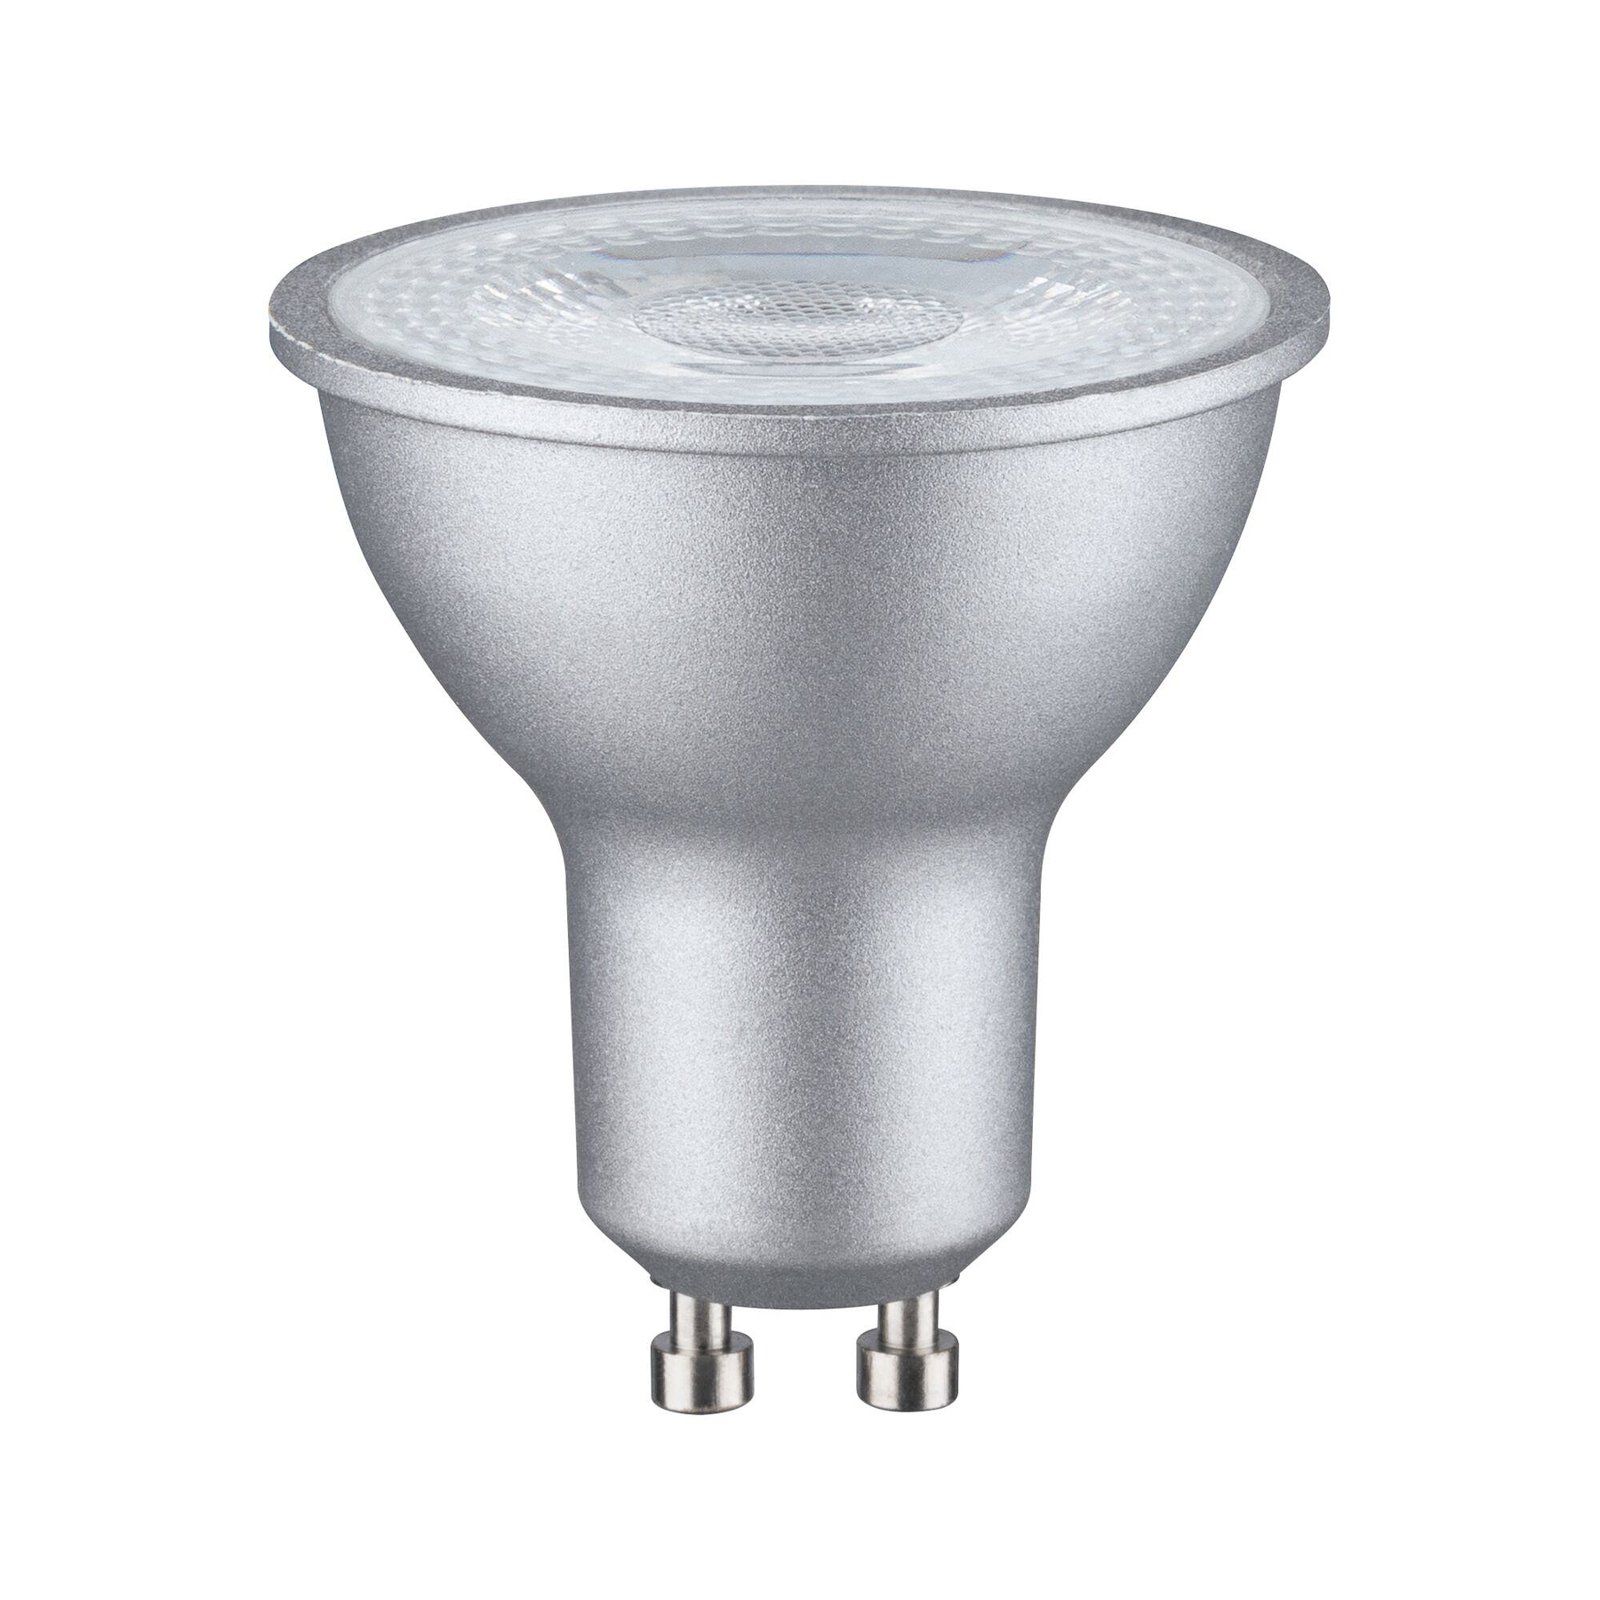 Paulmann LED bulb 2,700 K chrome GU10 8 W dimmable 36°